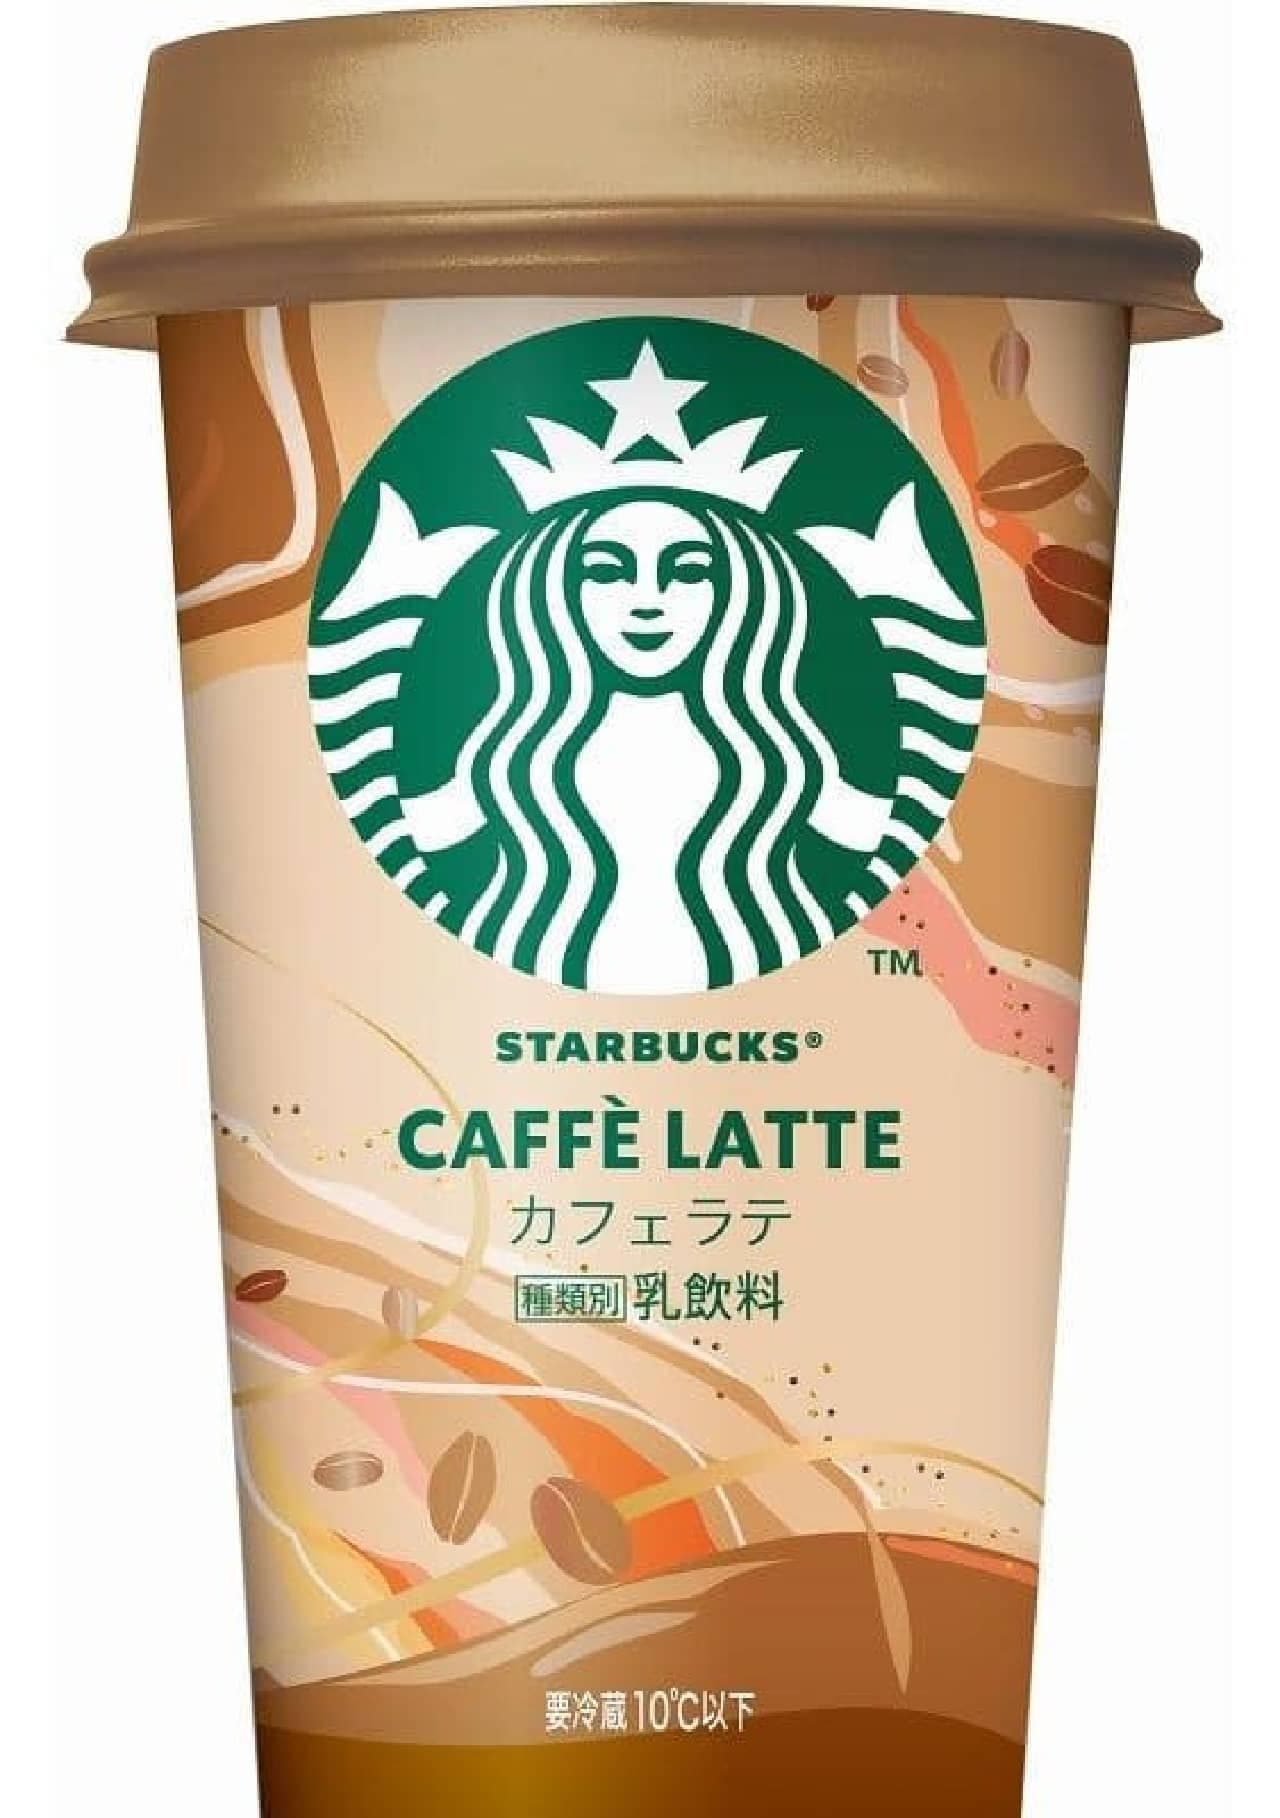 Starbucks Cafe Latte